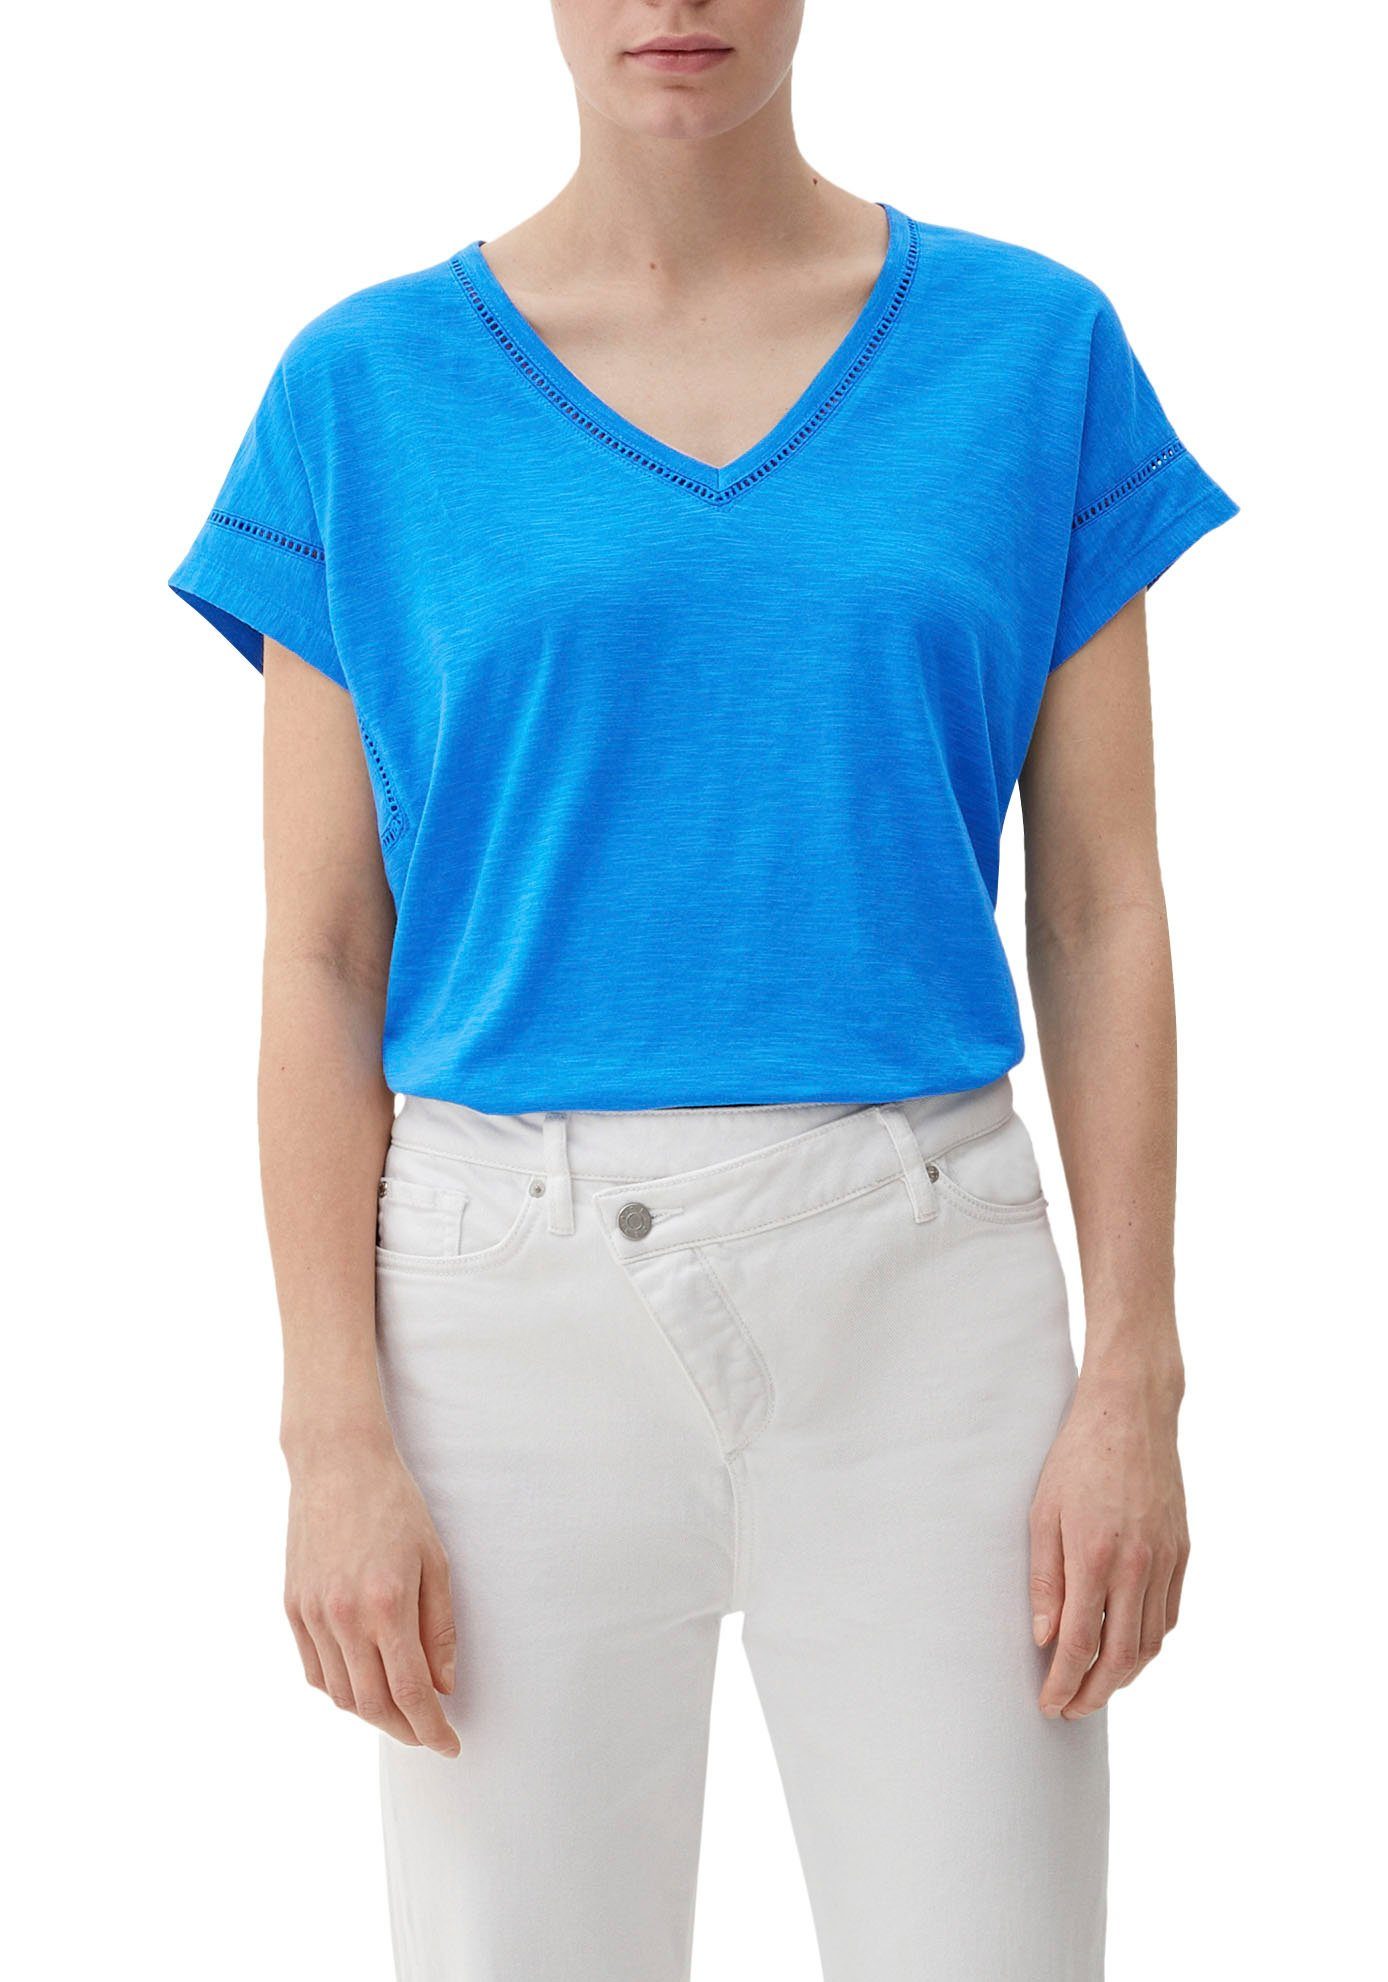 Zu günstigen Preisen s.Oliver T-Shirt mit blue Zierborte